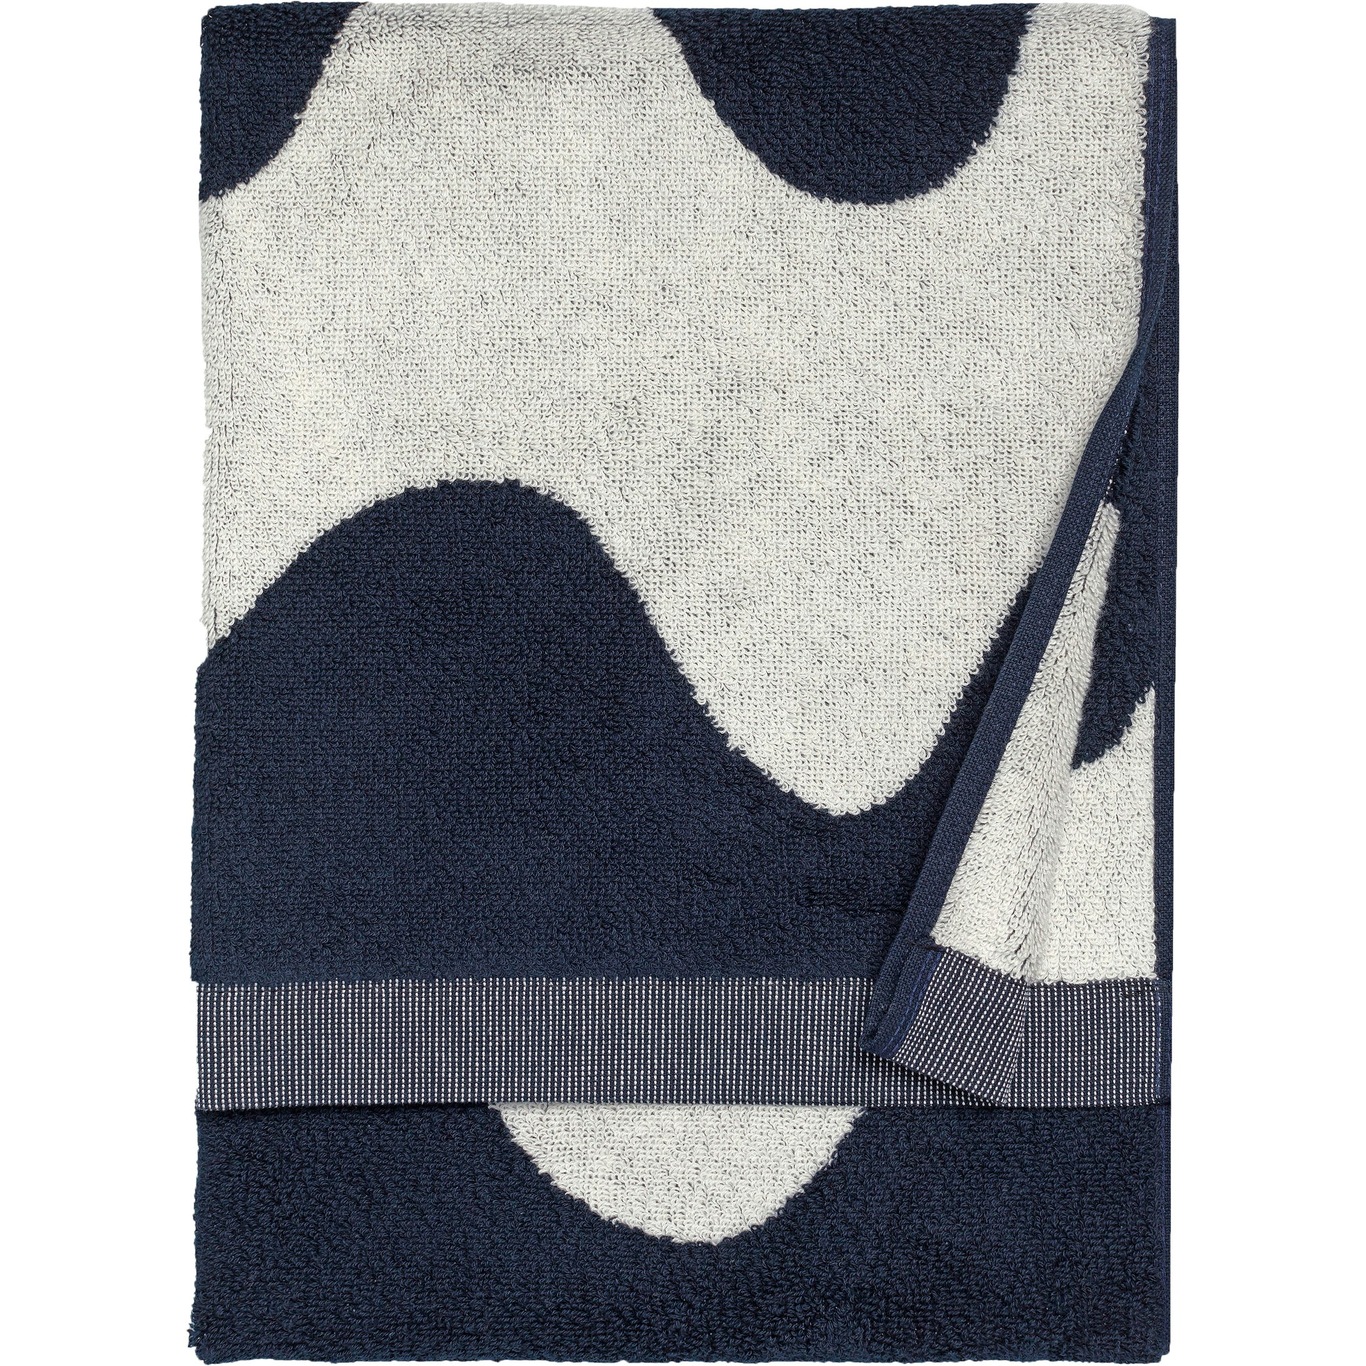 Lokki Handdoek Donkerblauw / Off-white, 50x70 cm